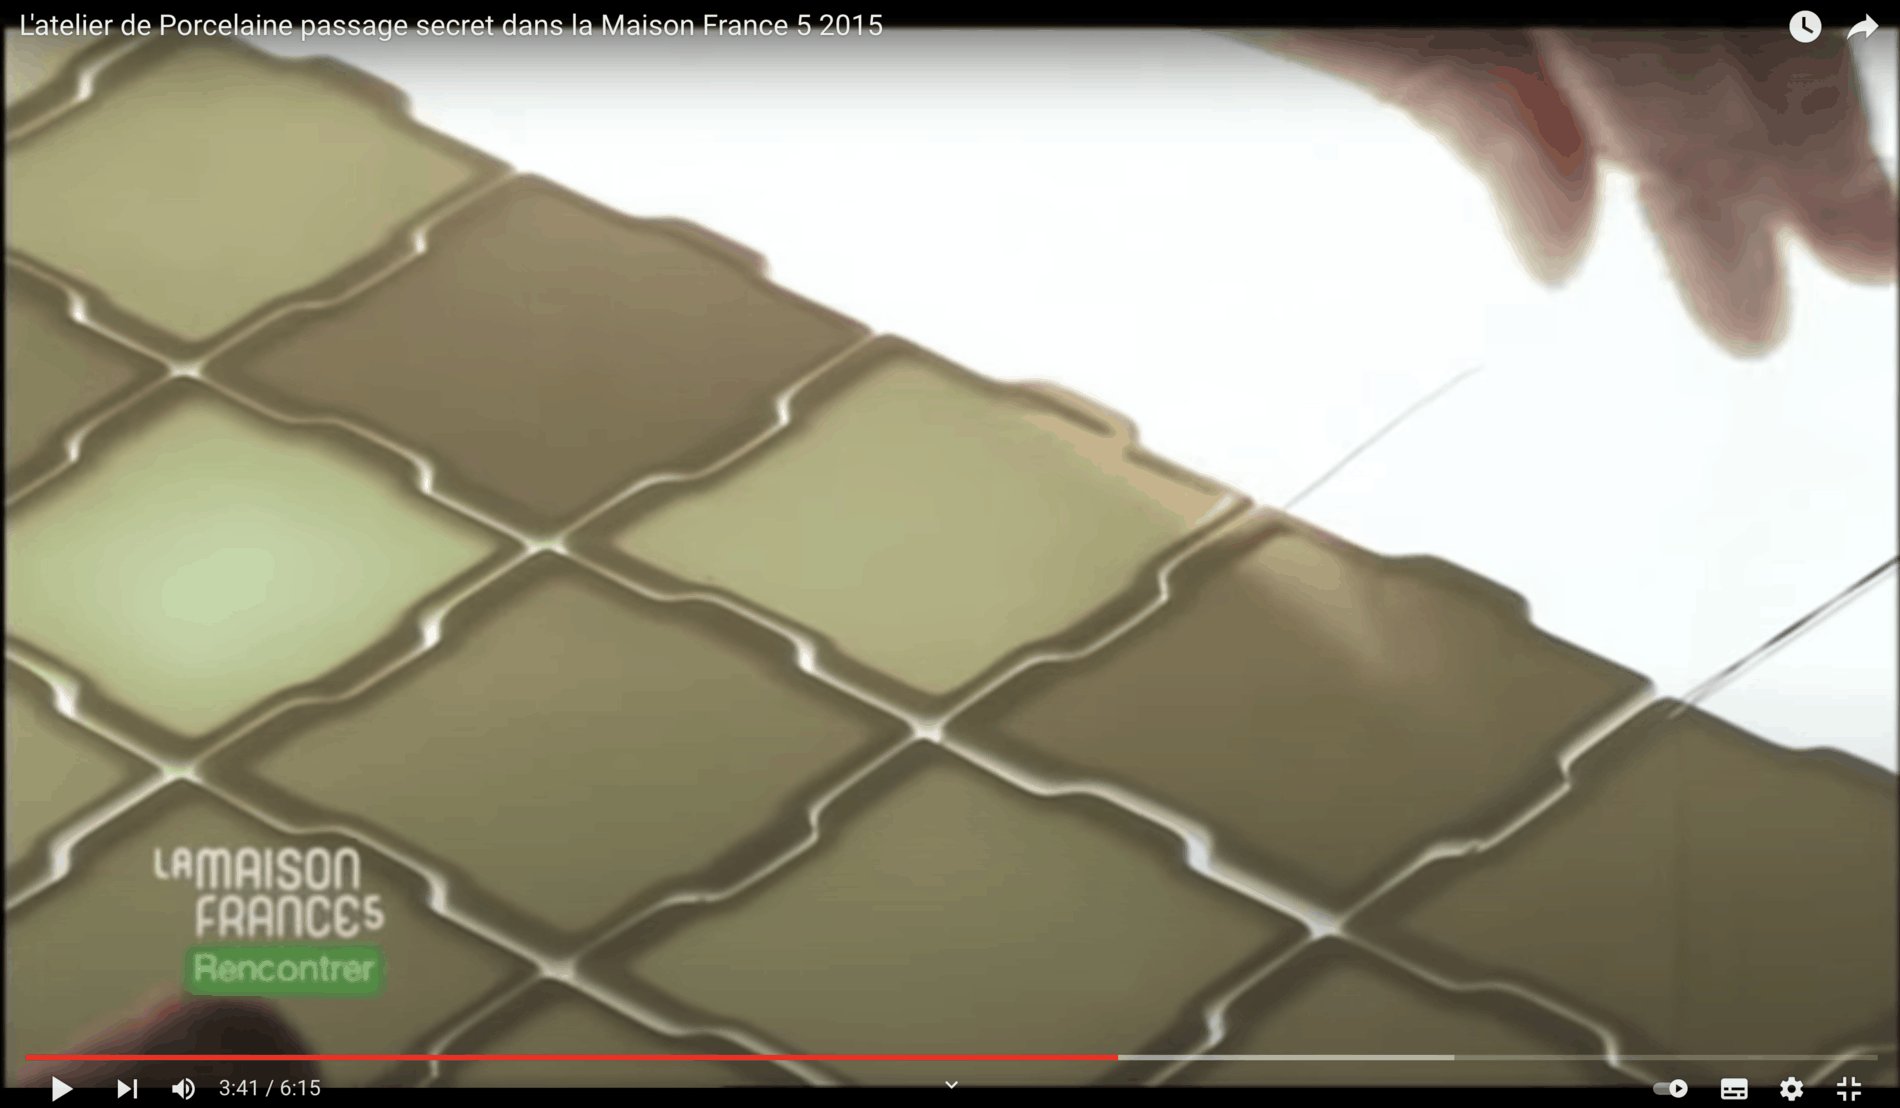 Passage secret - vidéo réalisée par la Maison France 5 en 2015 sur l'atelier passage secret et sa fabrication de Rideaux en porcelaine souple et translucide. 